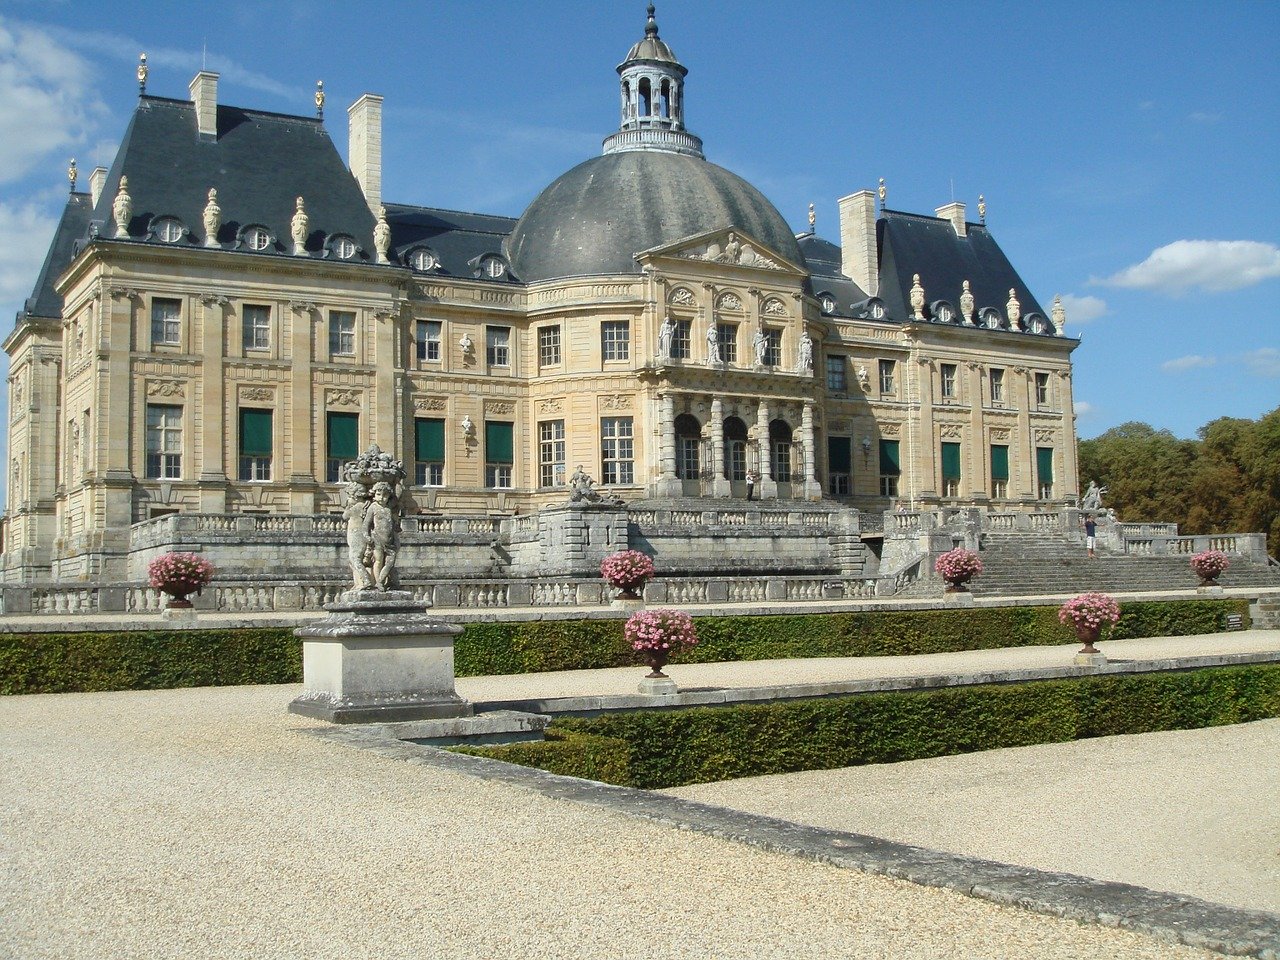 The château - Vaux le Vicomte